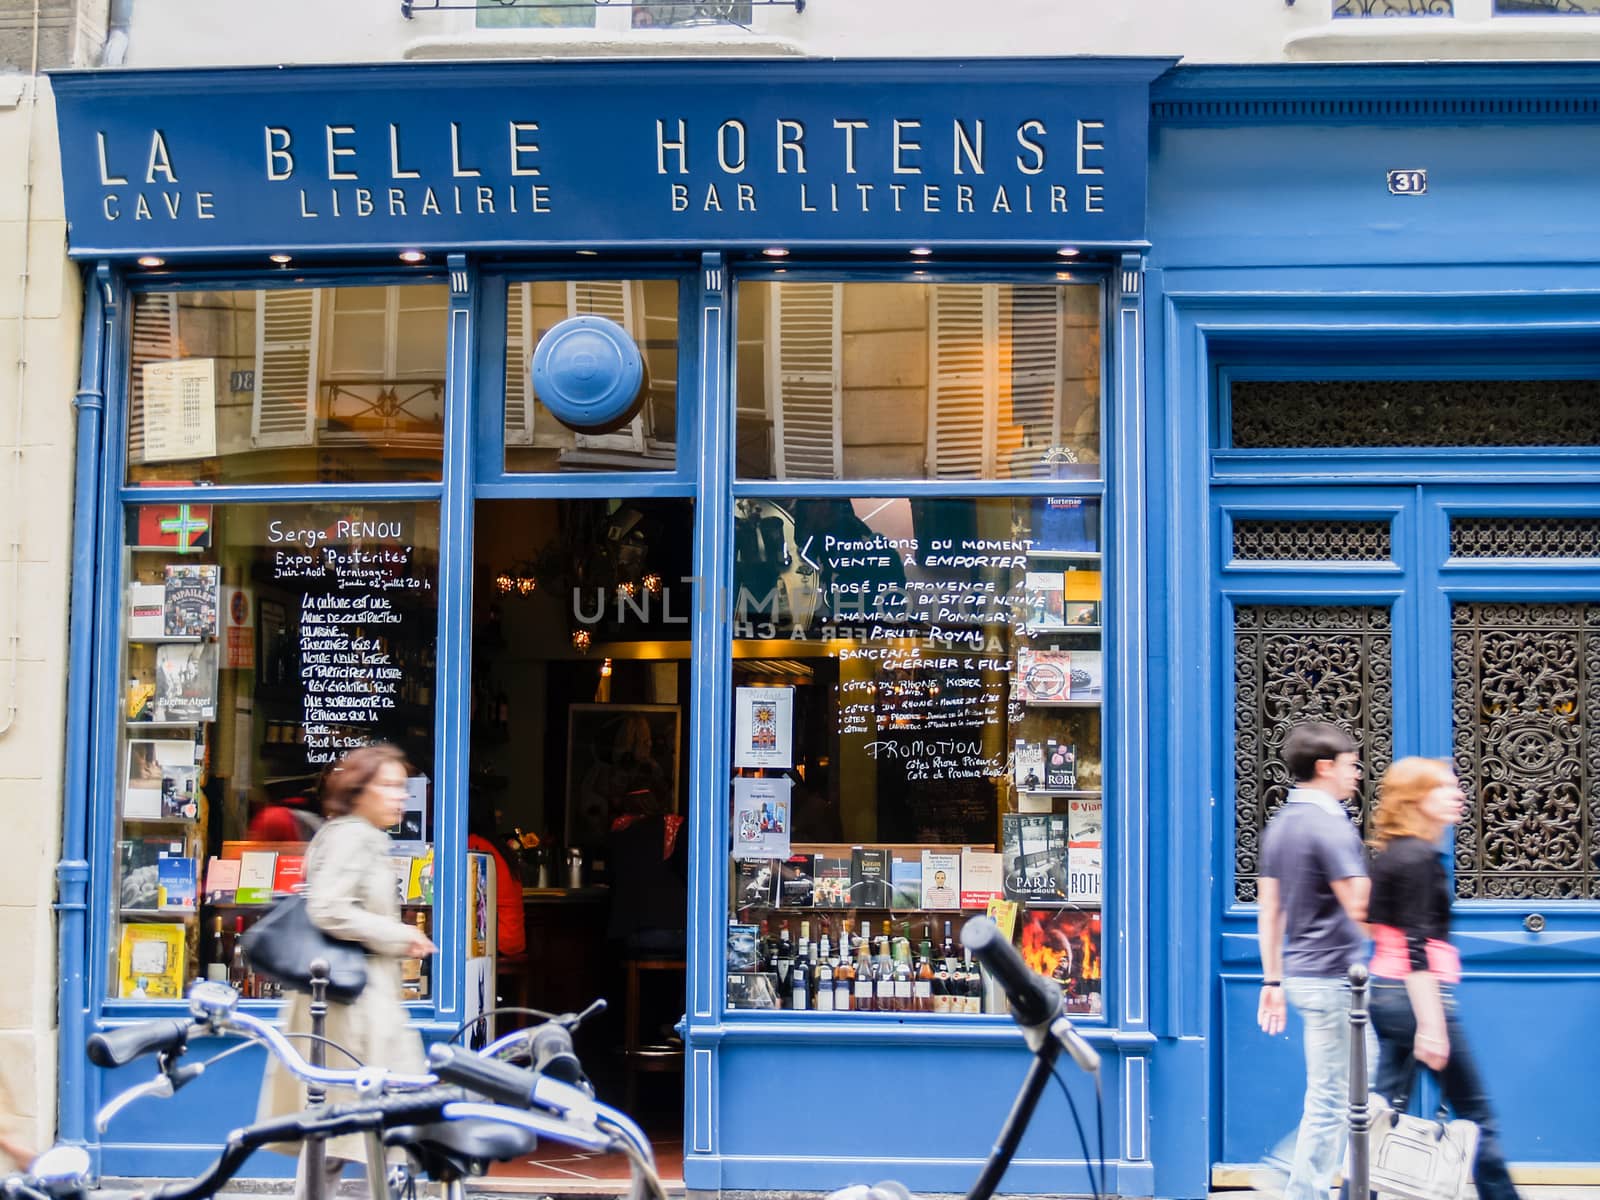 La belle Hortense, Marais, Paris. by brians101